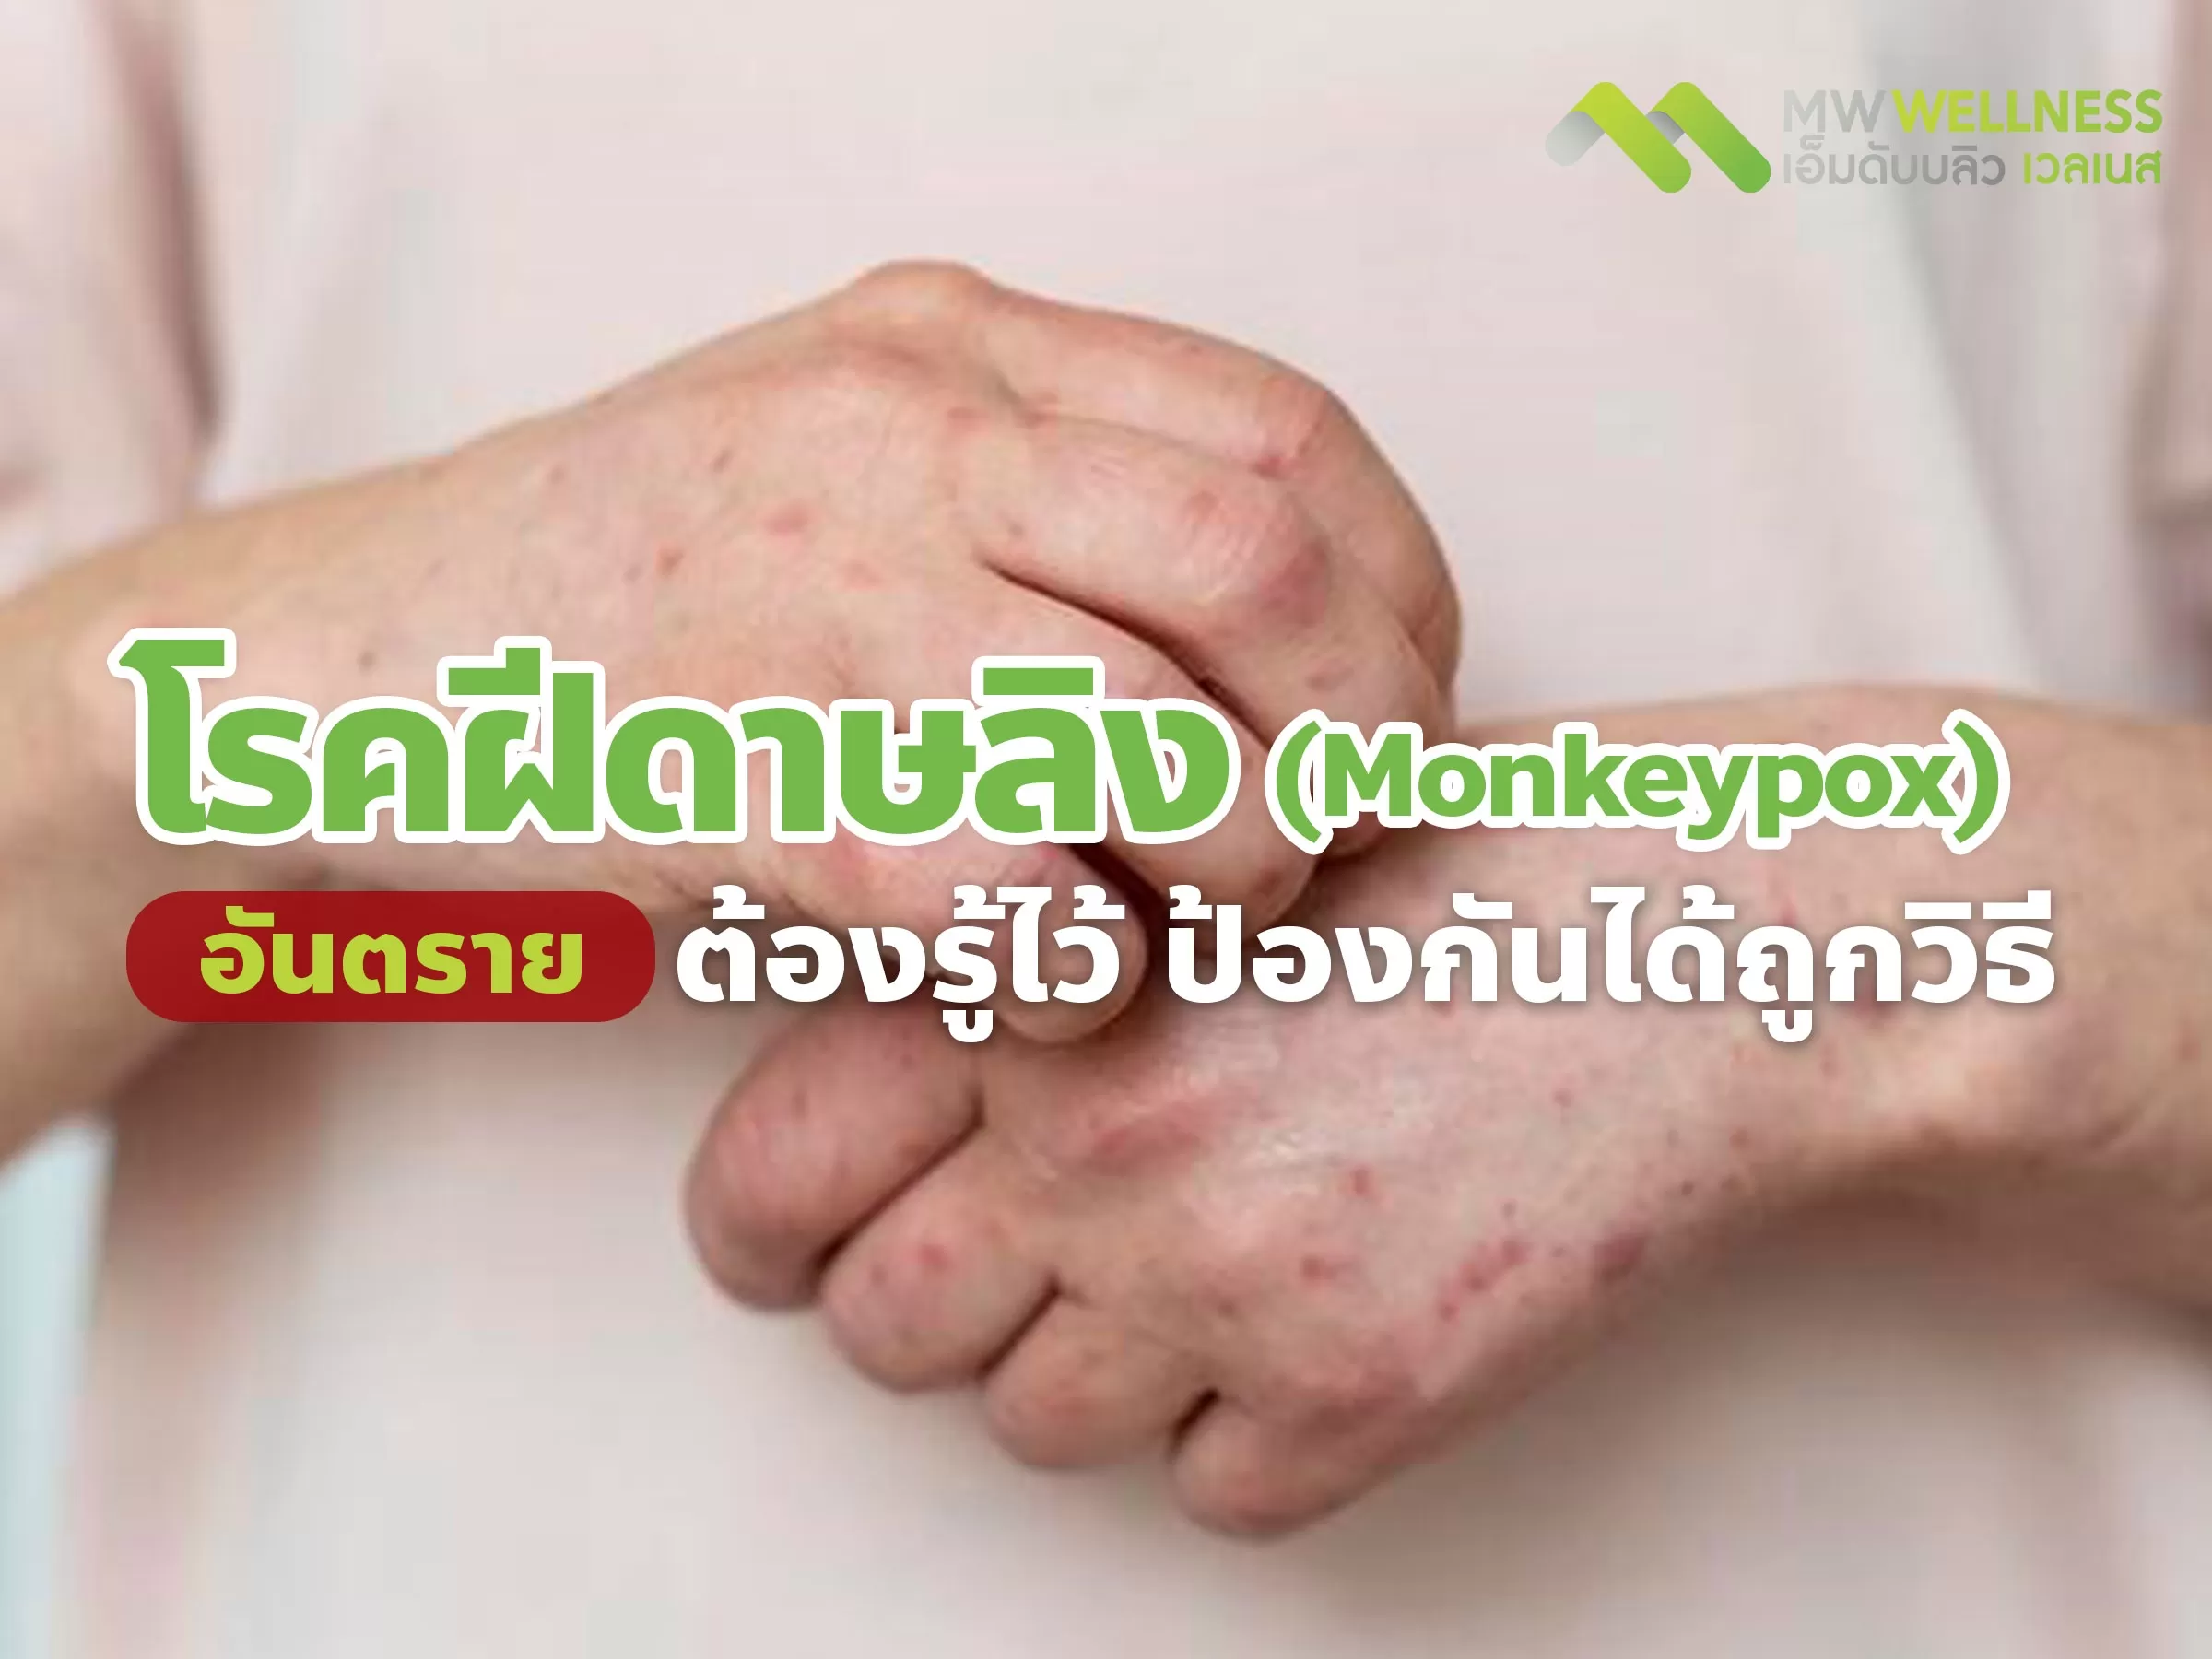 โรคฝีดาษลิง ( Monkeypox ) อันตราย ต้องรู้ไว้ ป้องกันได้ถูกวิธี